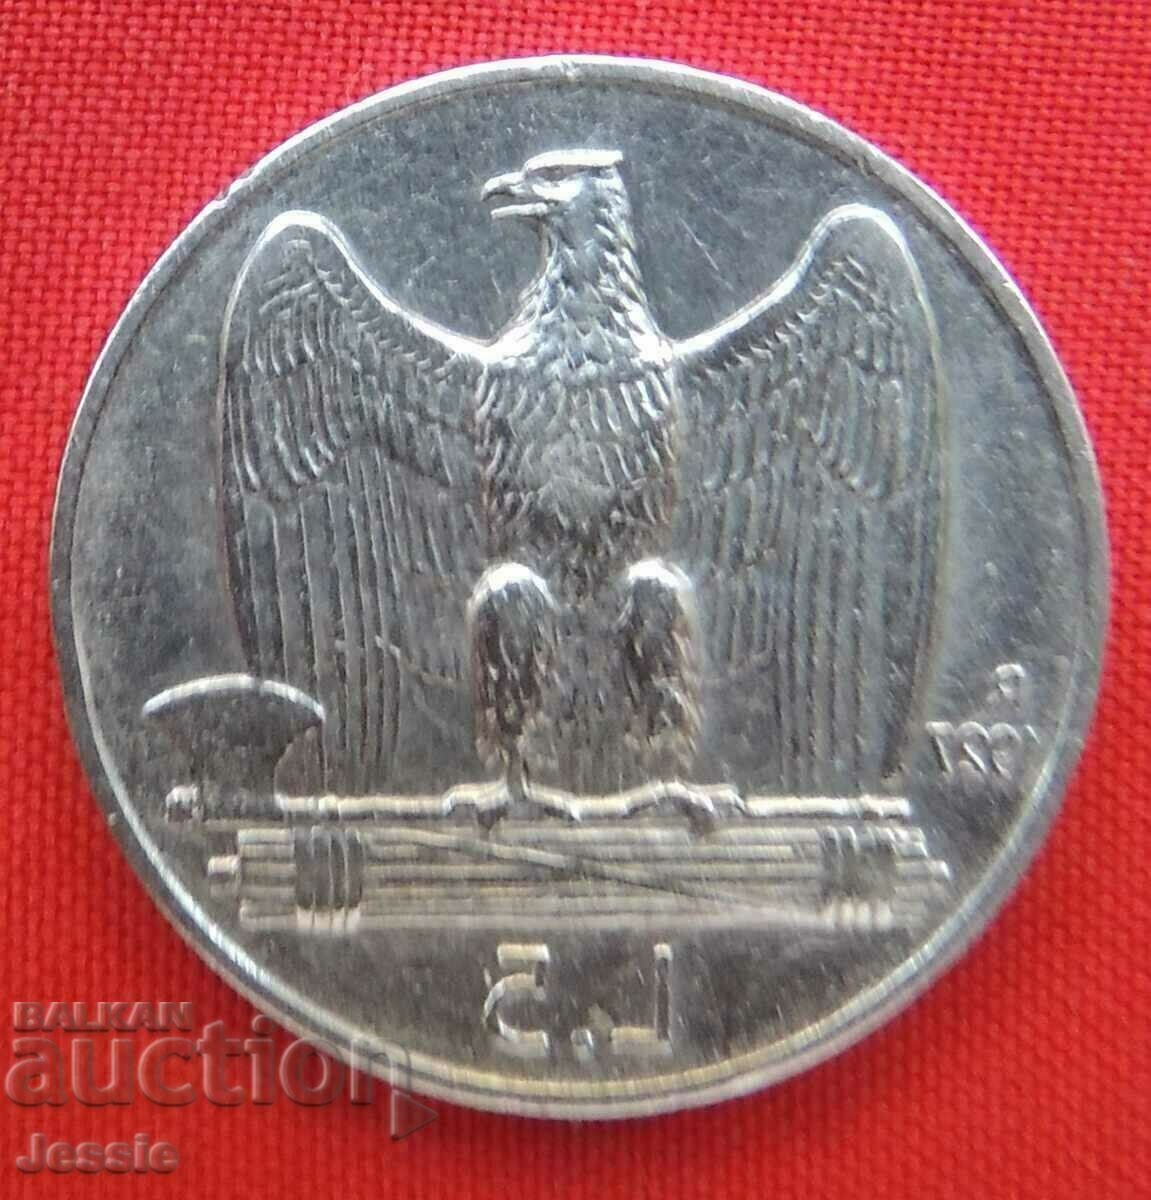 5 лири 1927 R №2 Италия сребро